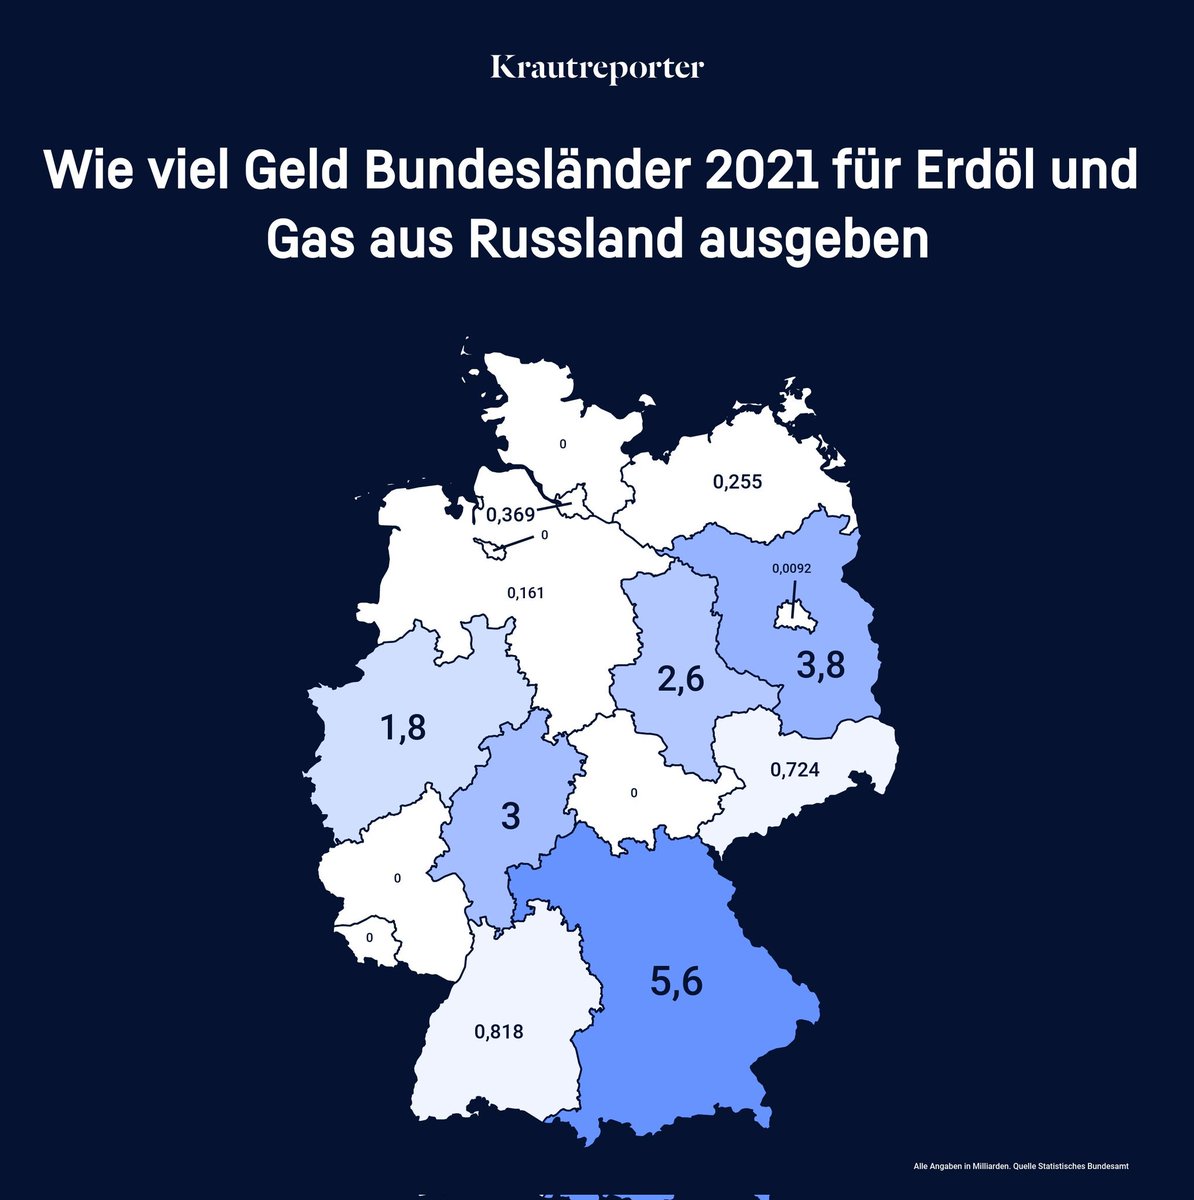 Doppelmoral #Soeder 

Wegen welchem Bundesland musste schnellstmöglich russisches Gas ersetzt werden?

Ach guck, das ist ja #Bayern, weil die #csU unfähig war, die Energiewende einzuleiten